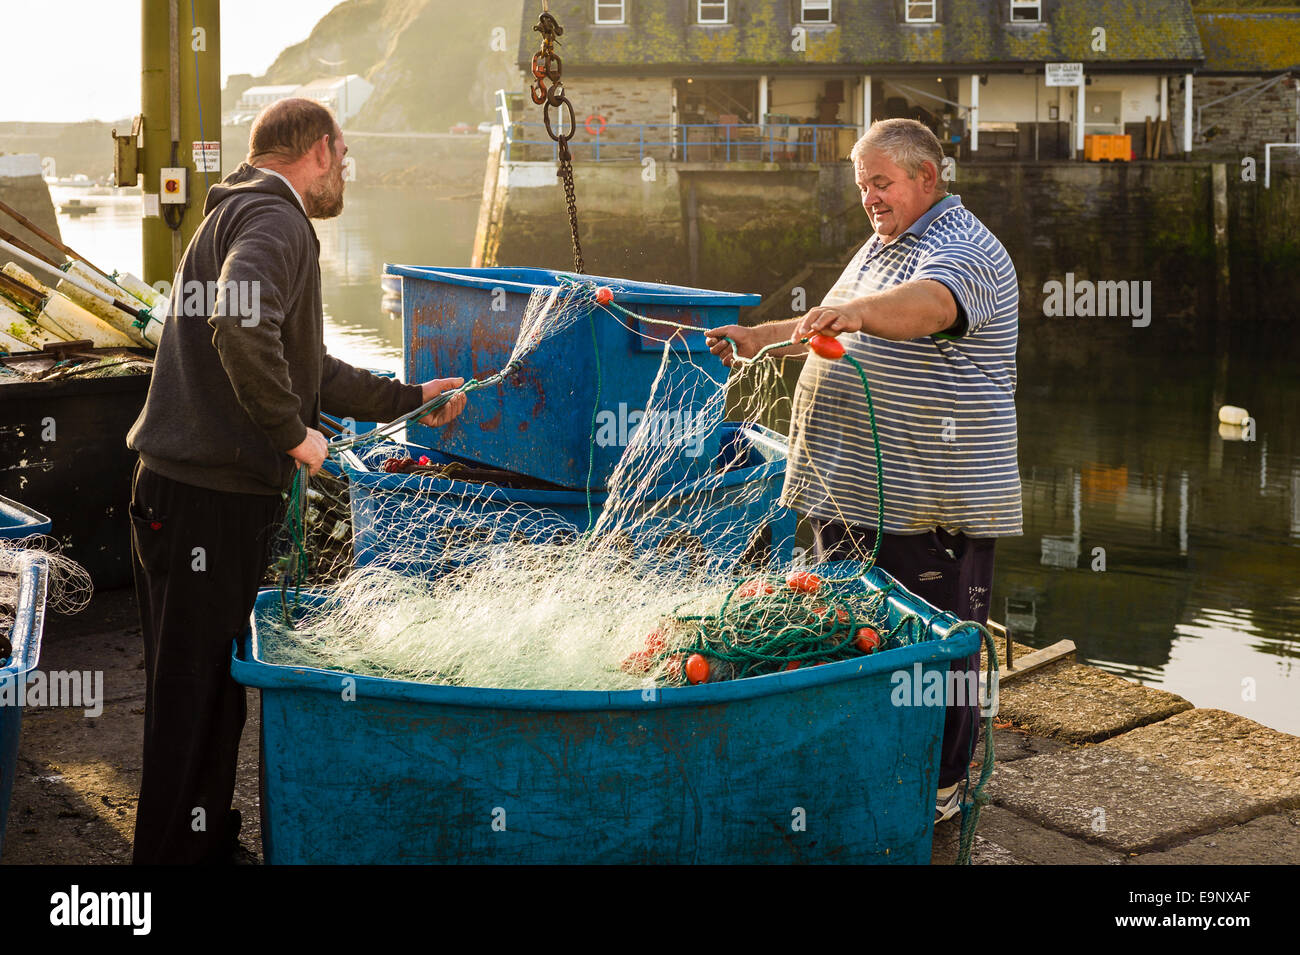 Les pêcheurs de Mevagissey inspectant les filets de pêche avant d'appareiller Banque D'Images